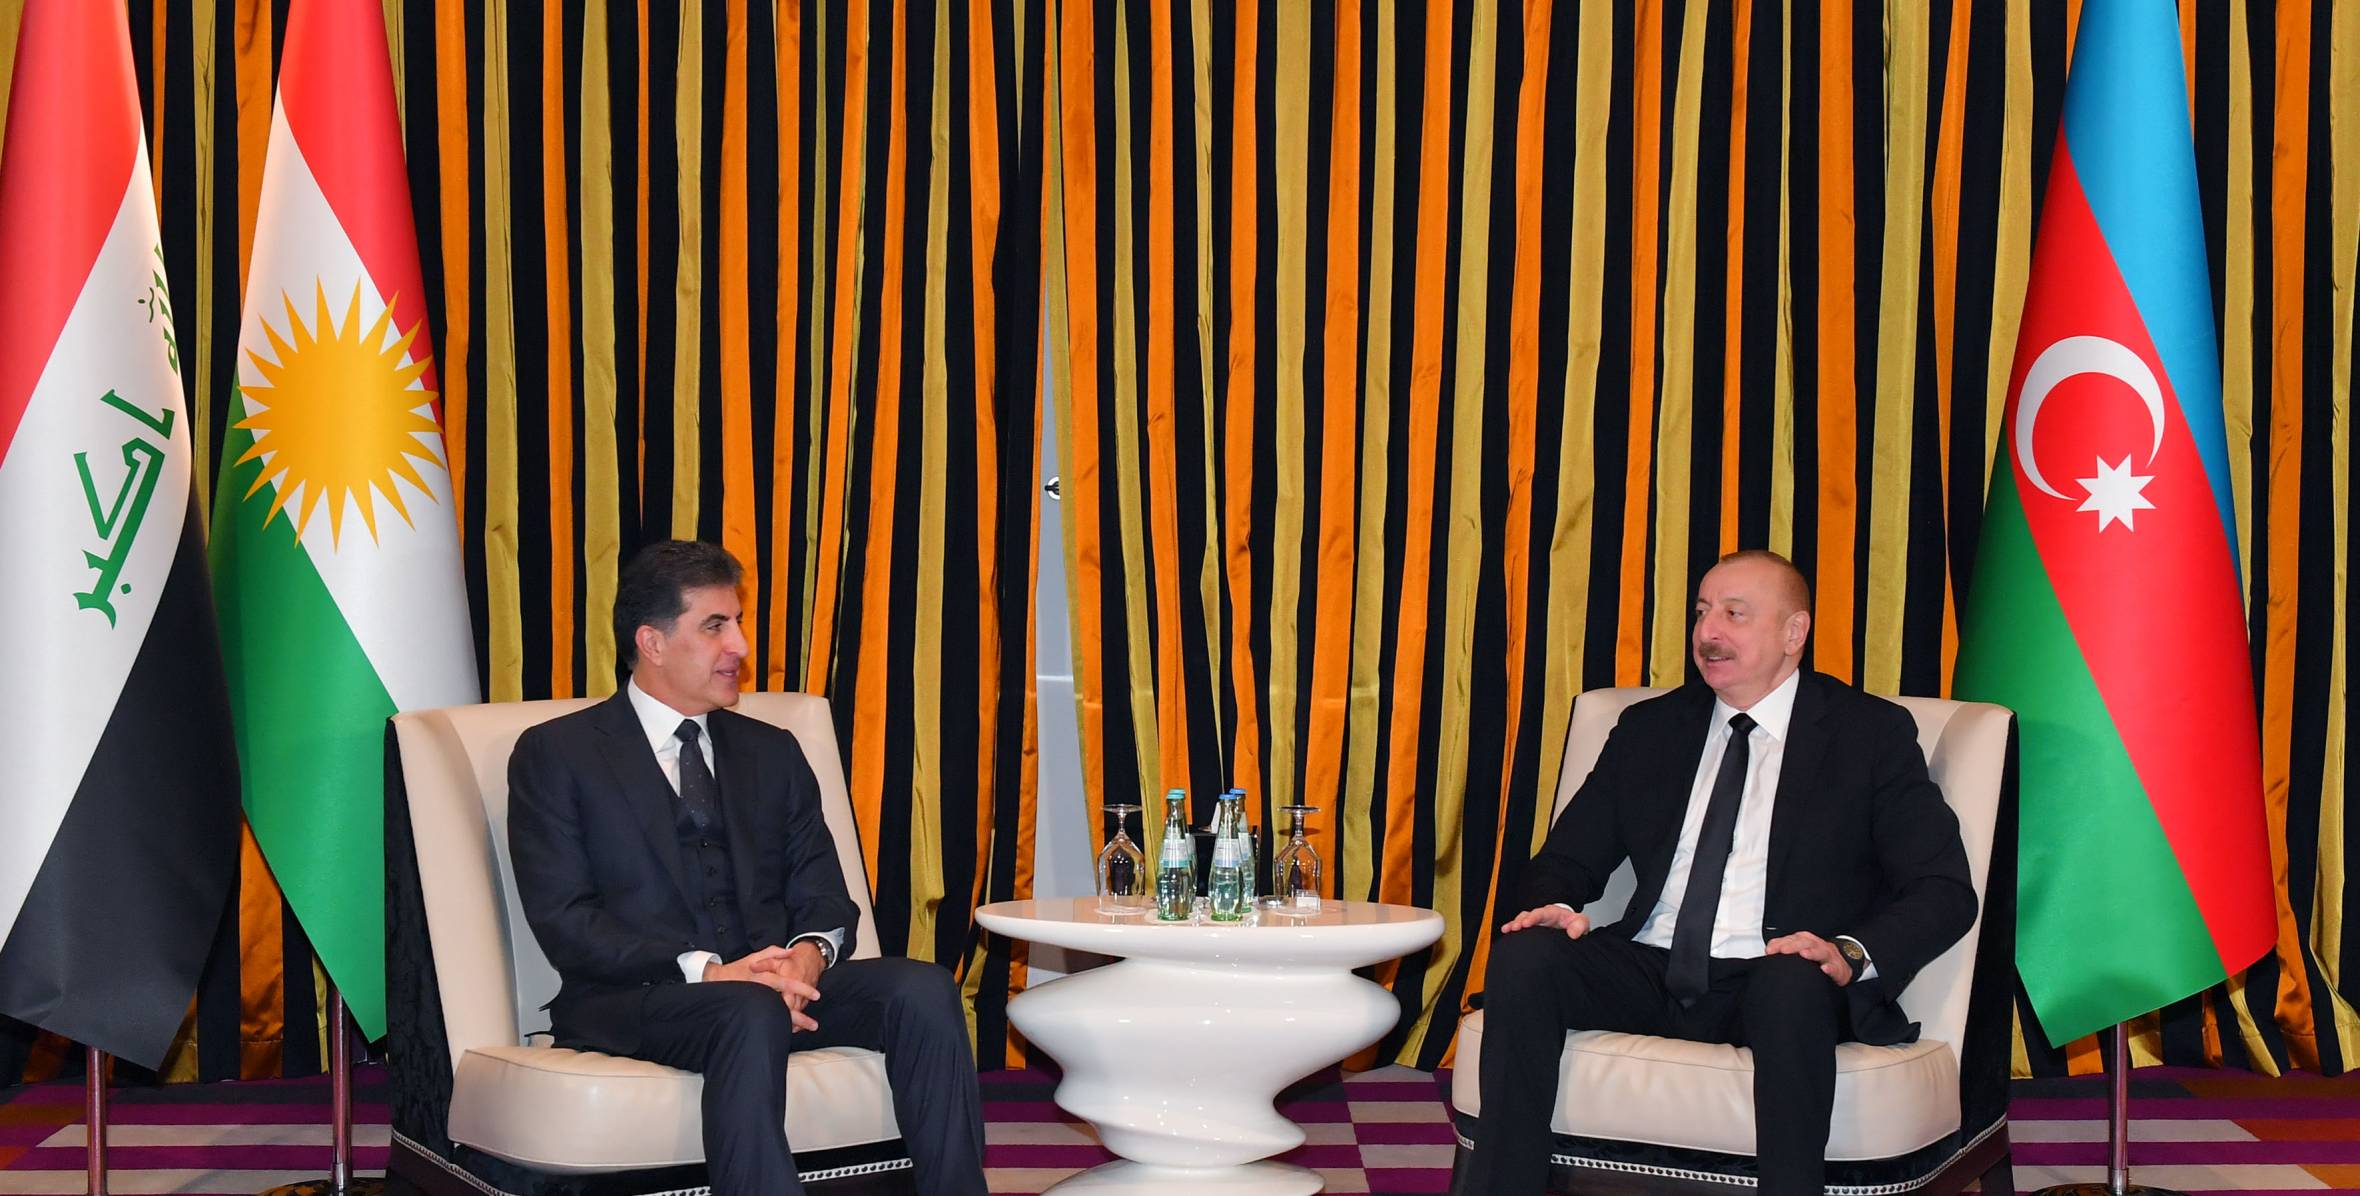 Ильхама Алиев встретился в Мюнхене с главой региона Иракский Курдистан